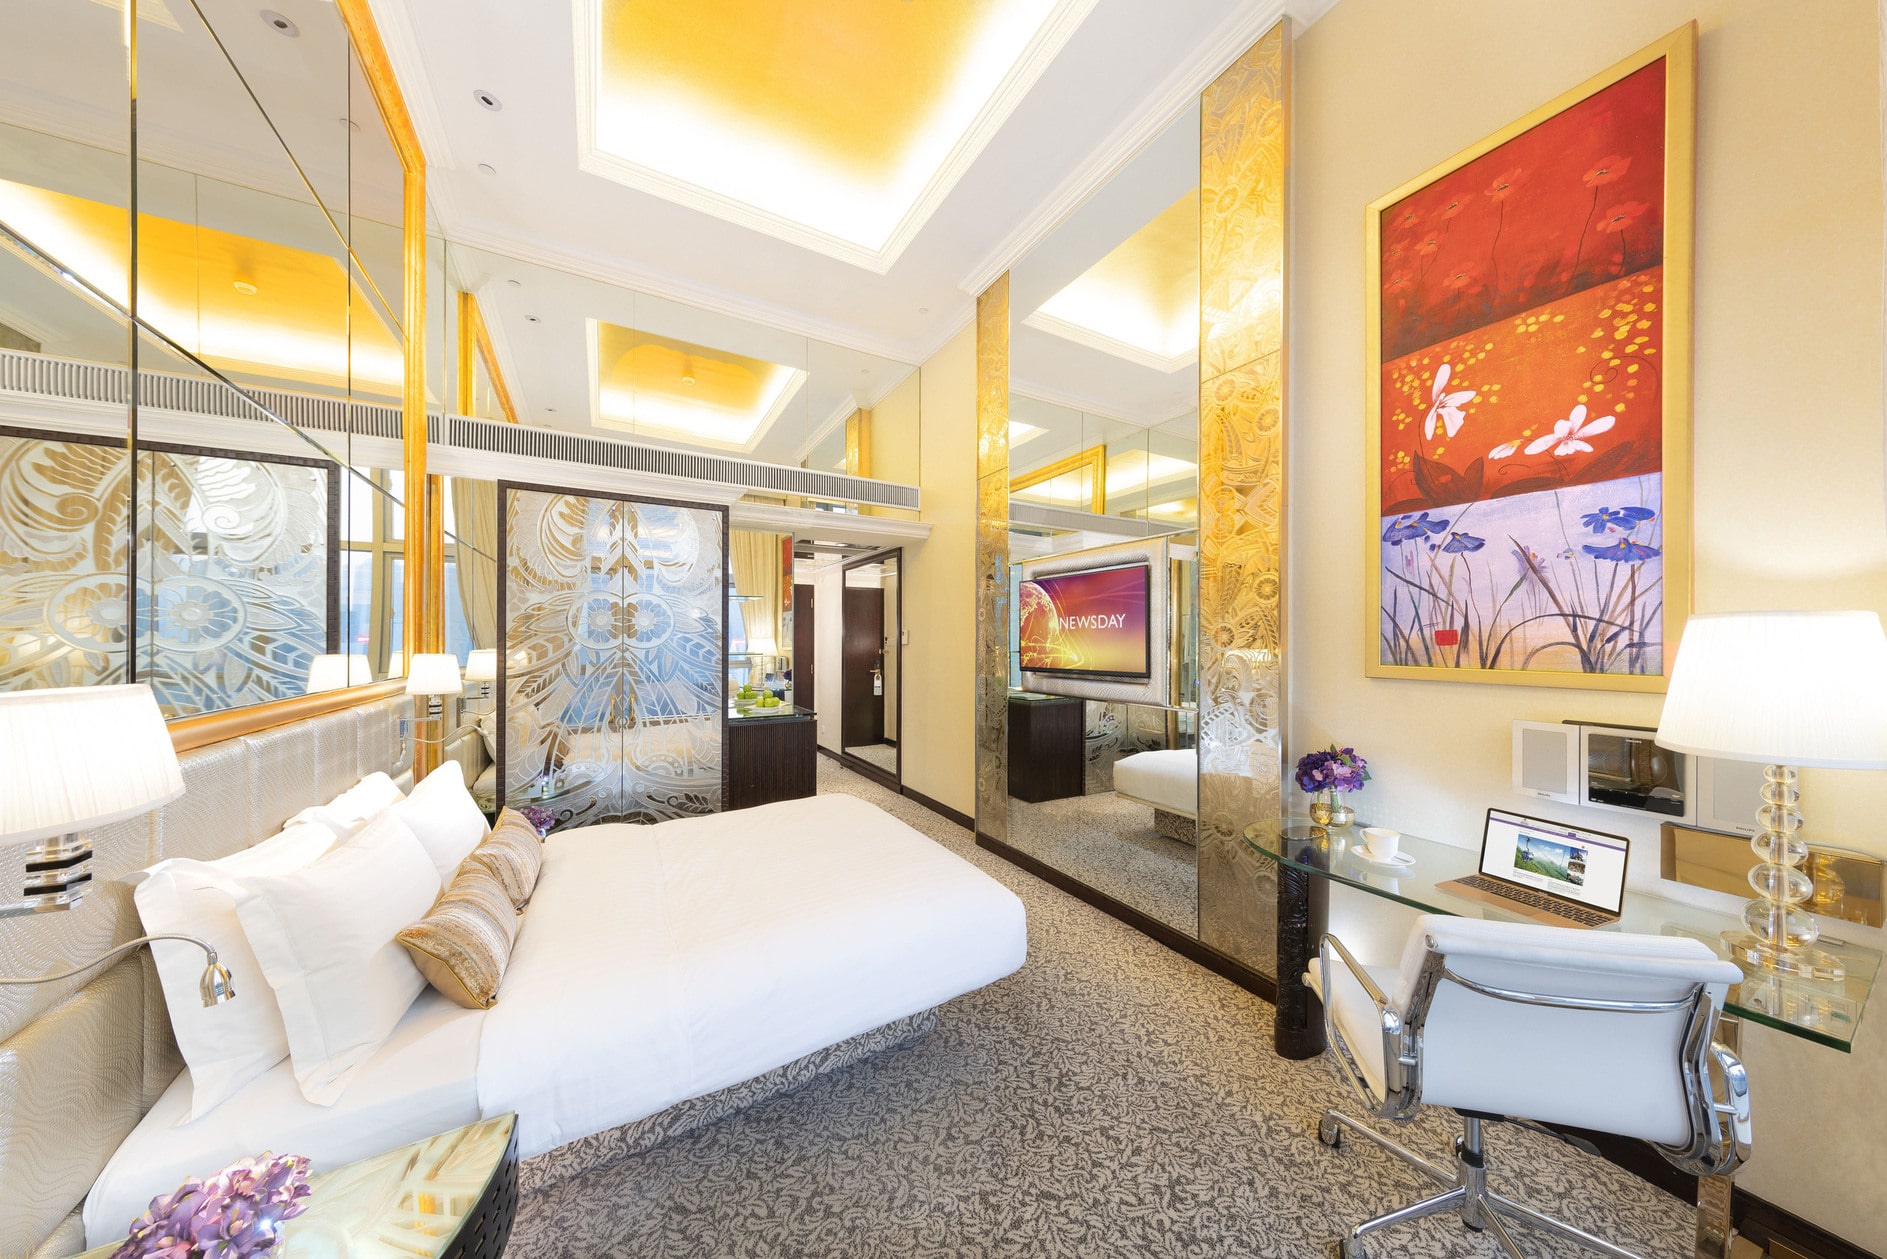 3.富豪香港酒店-行政樓層高級客房